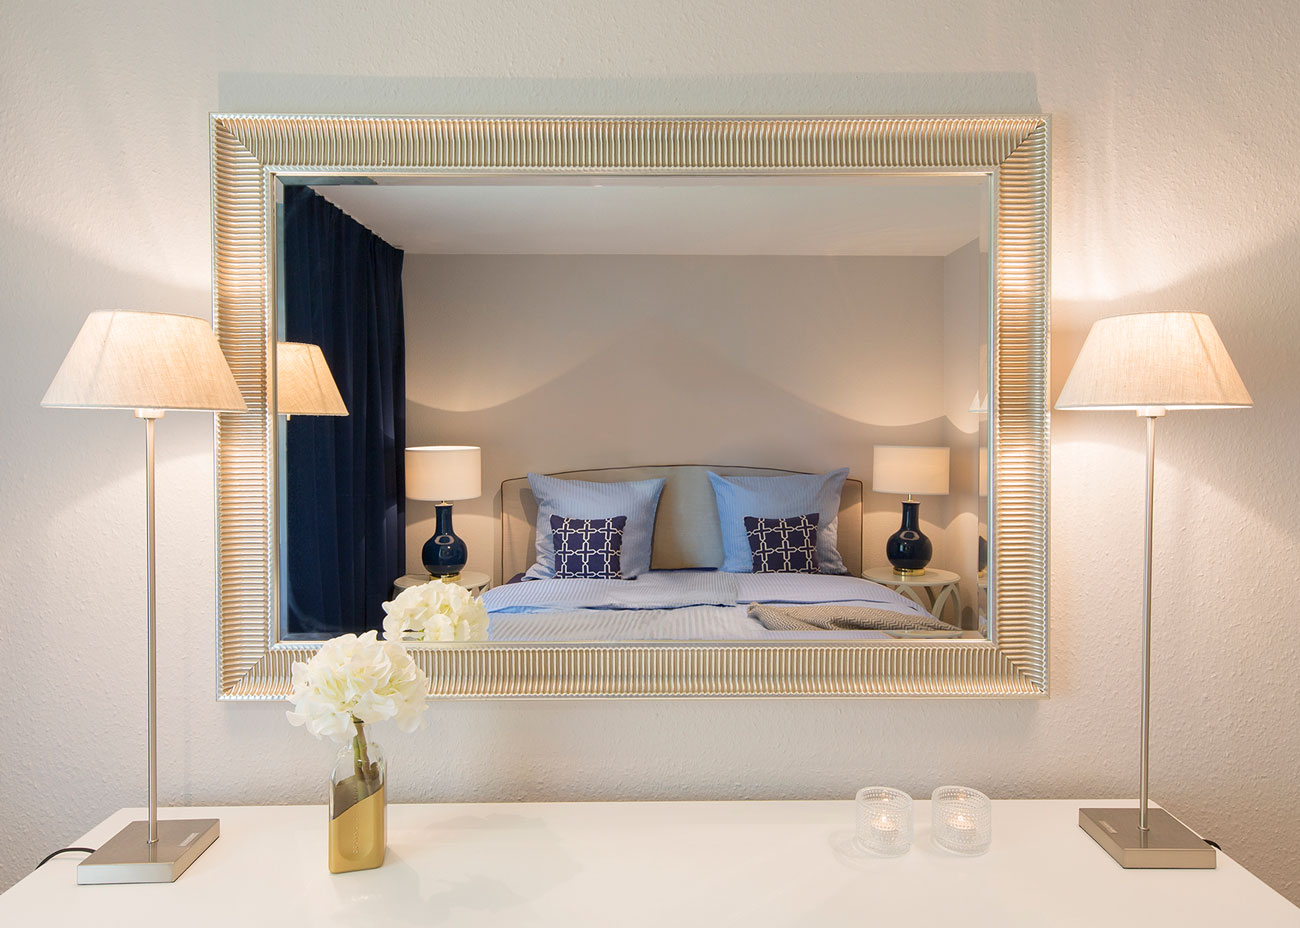 Wohnung gemütlich einrichten schlafzimmer taupe bett blau weiss leuchten spiegel vorhänge